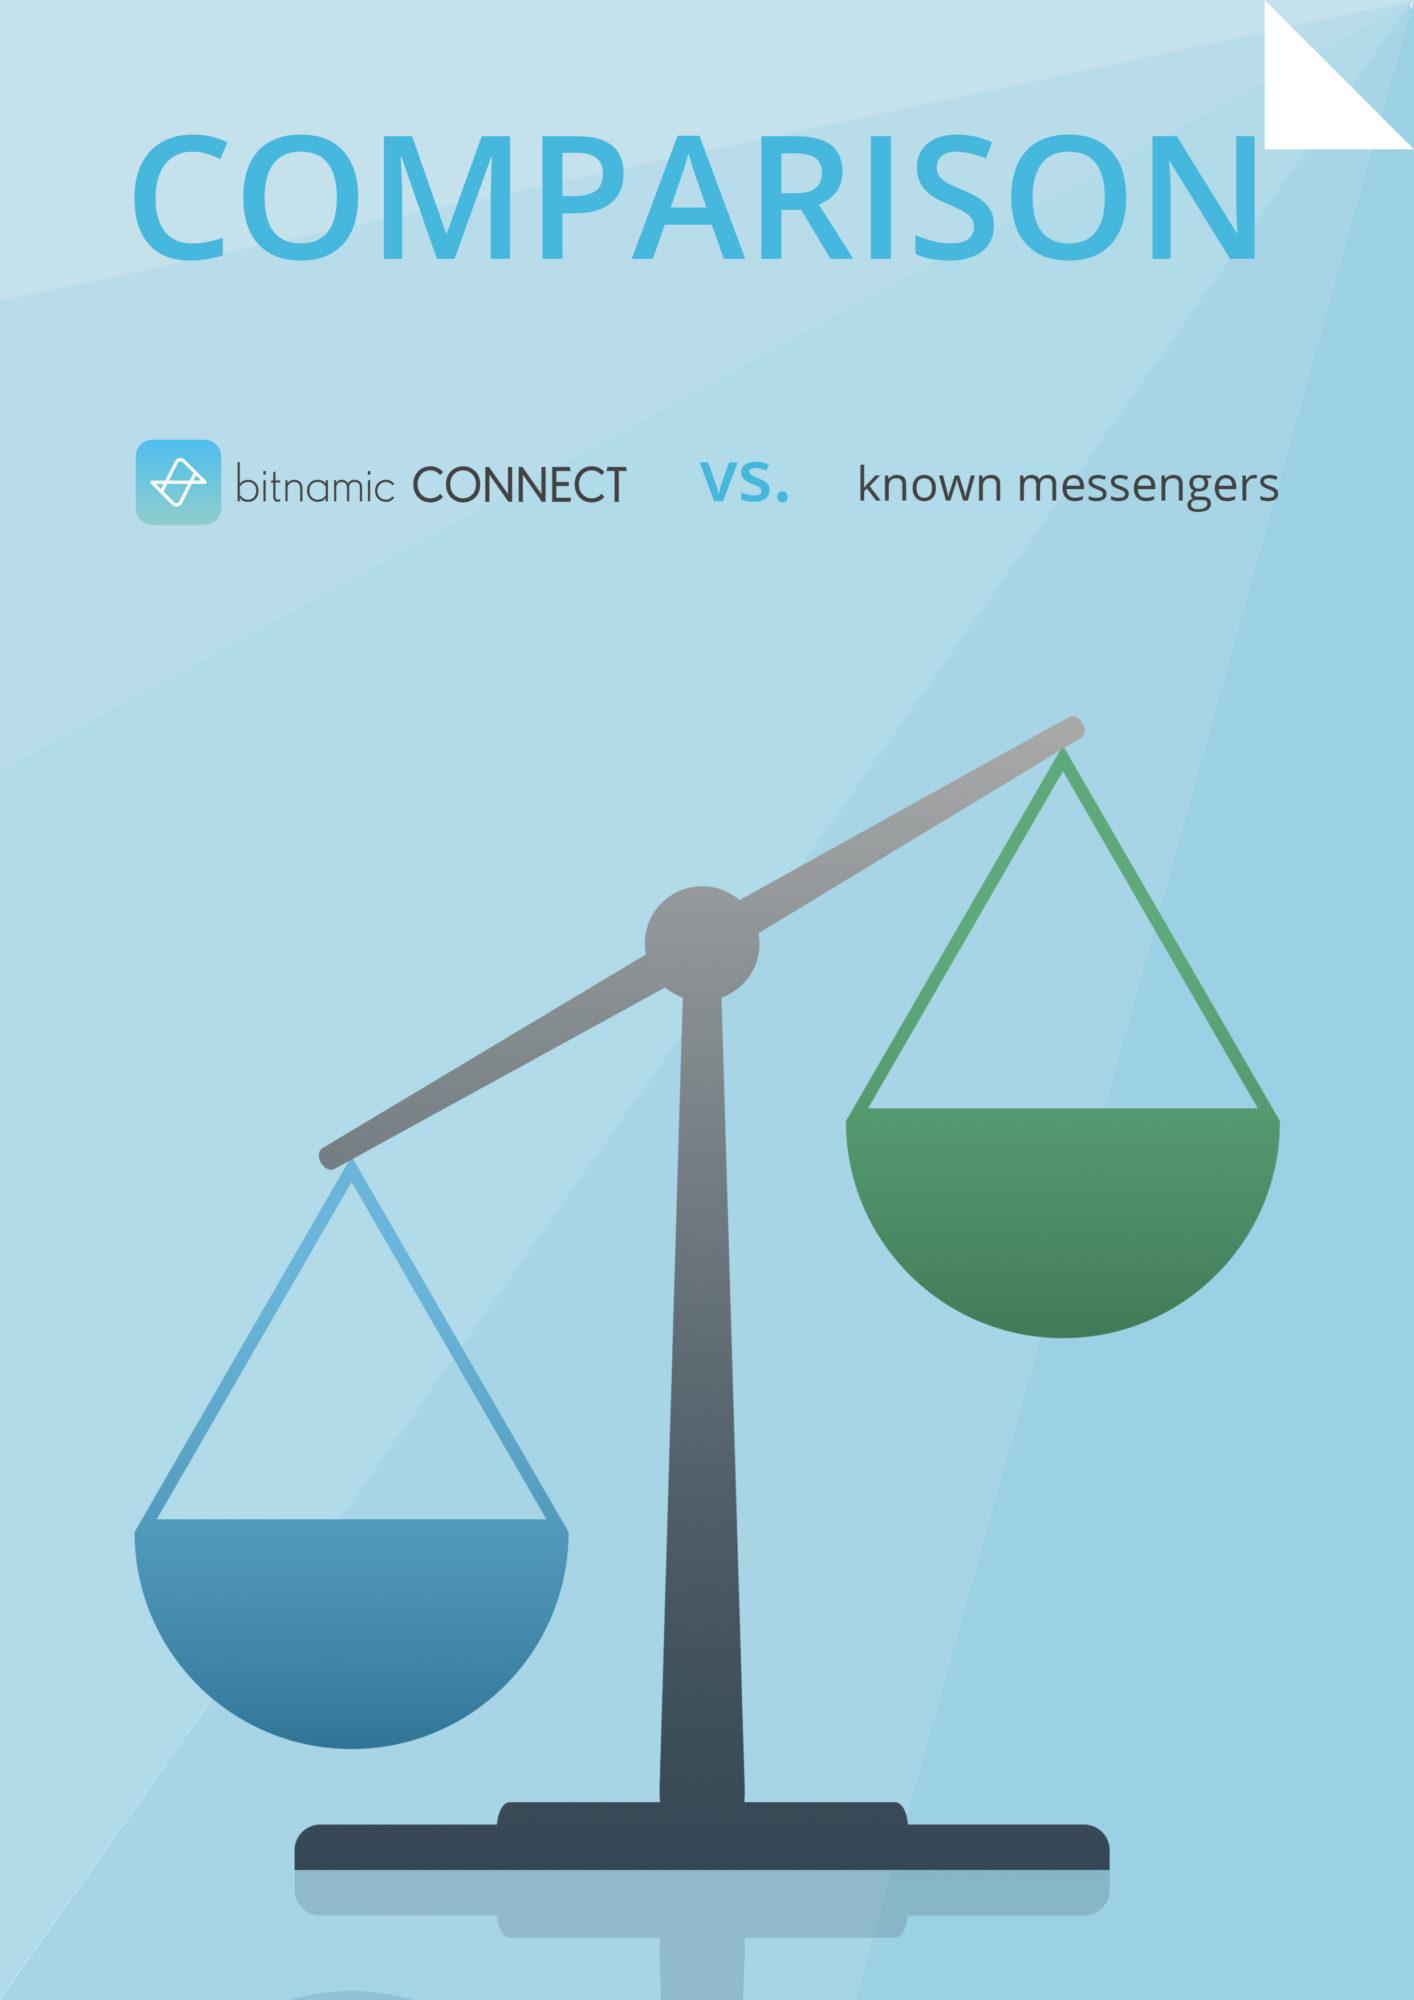 Comparison bitnamic CONNECT vs messengers